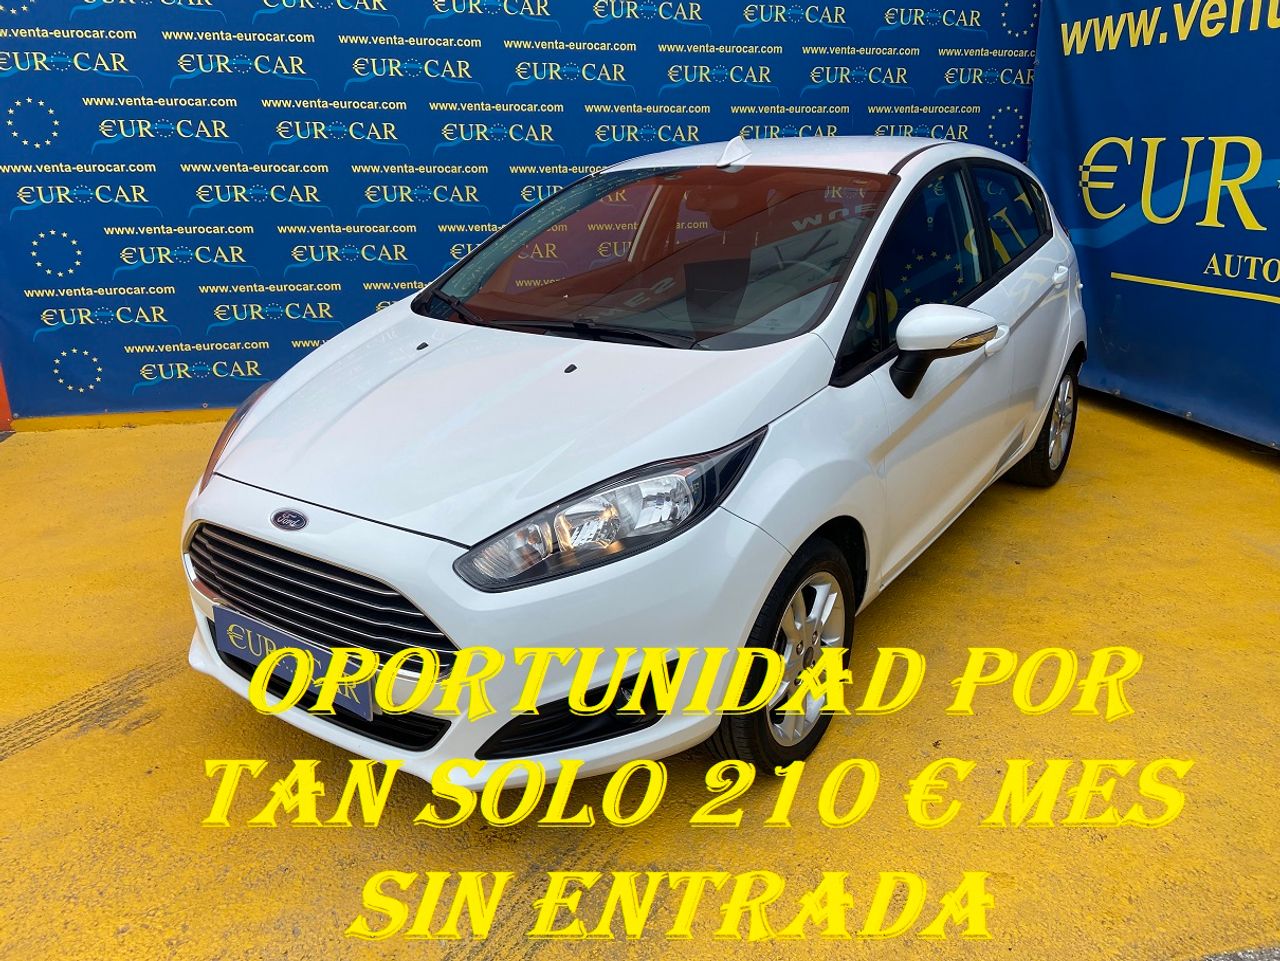 Ford Fiesta ocasión segunda mano 2016 Gasolina por 10.950€ en Alicante